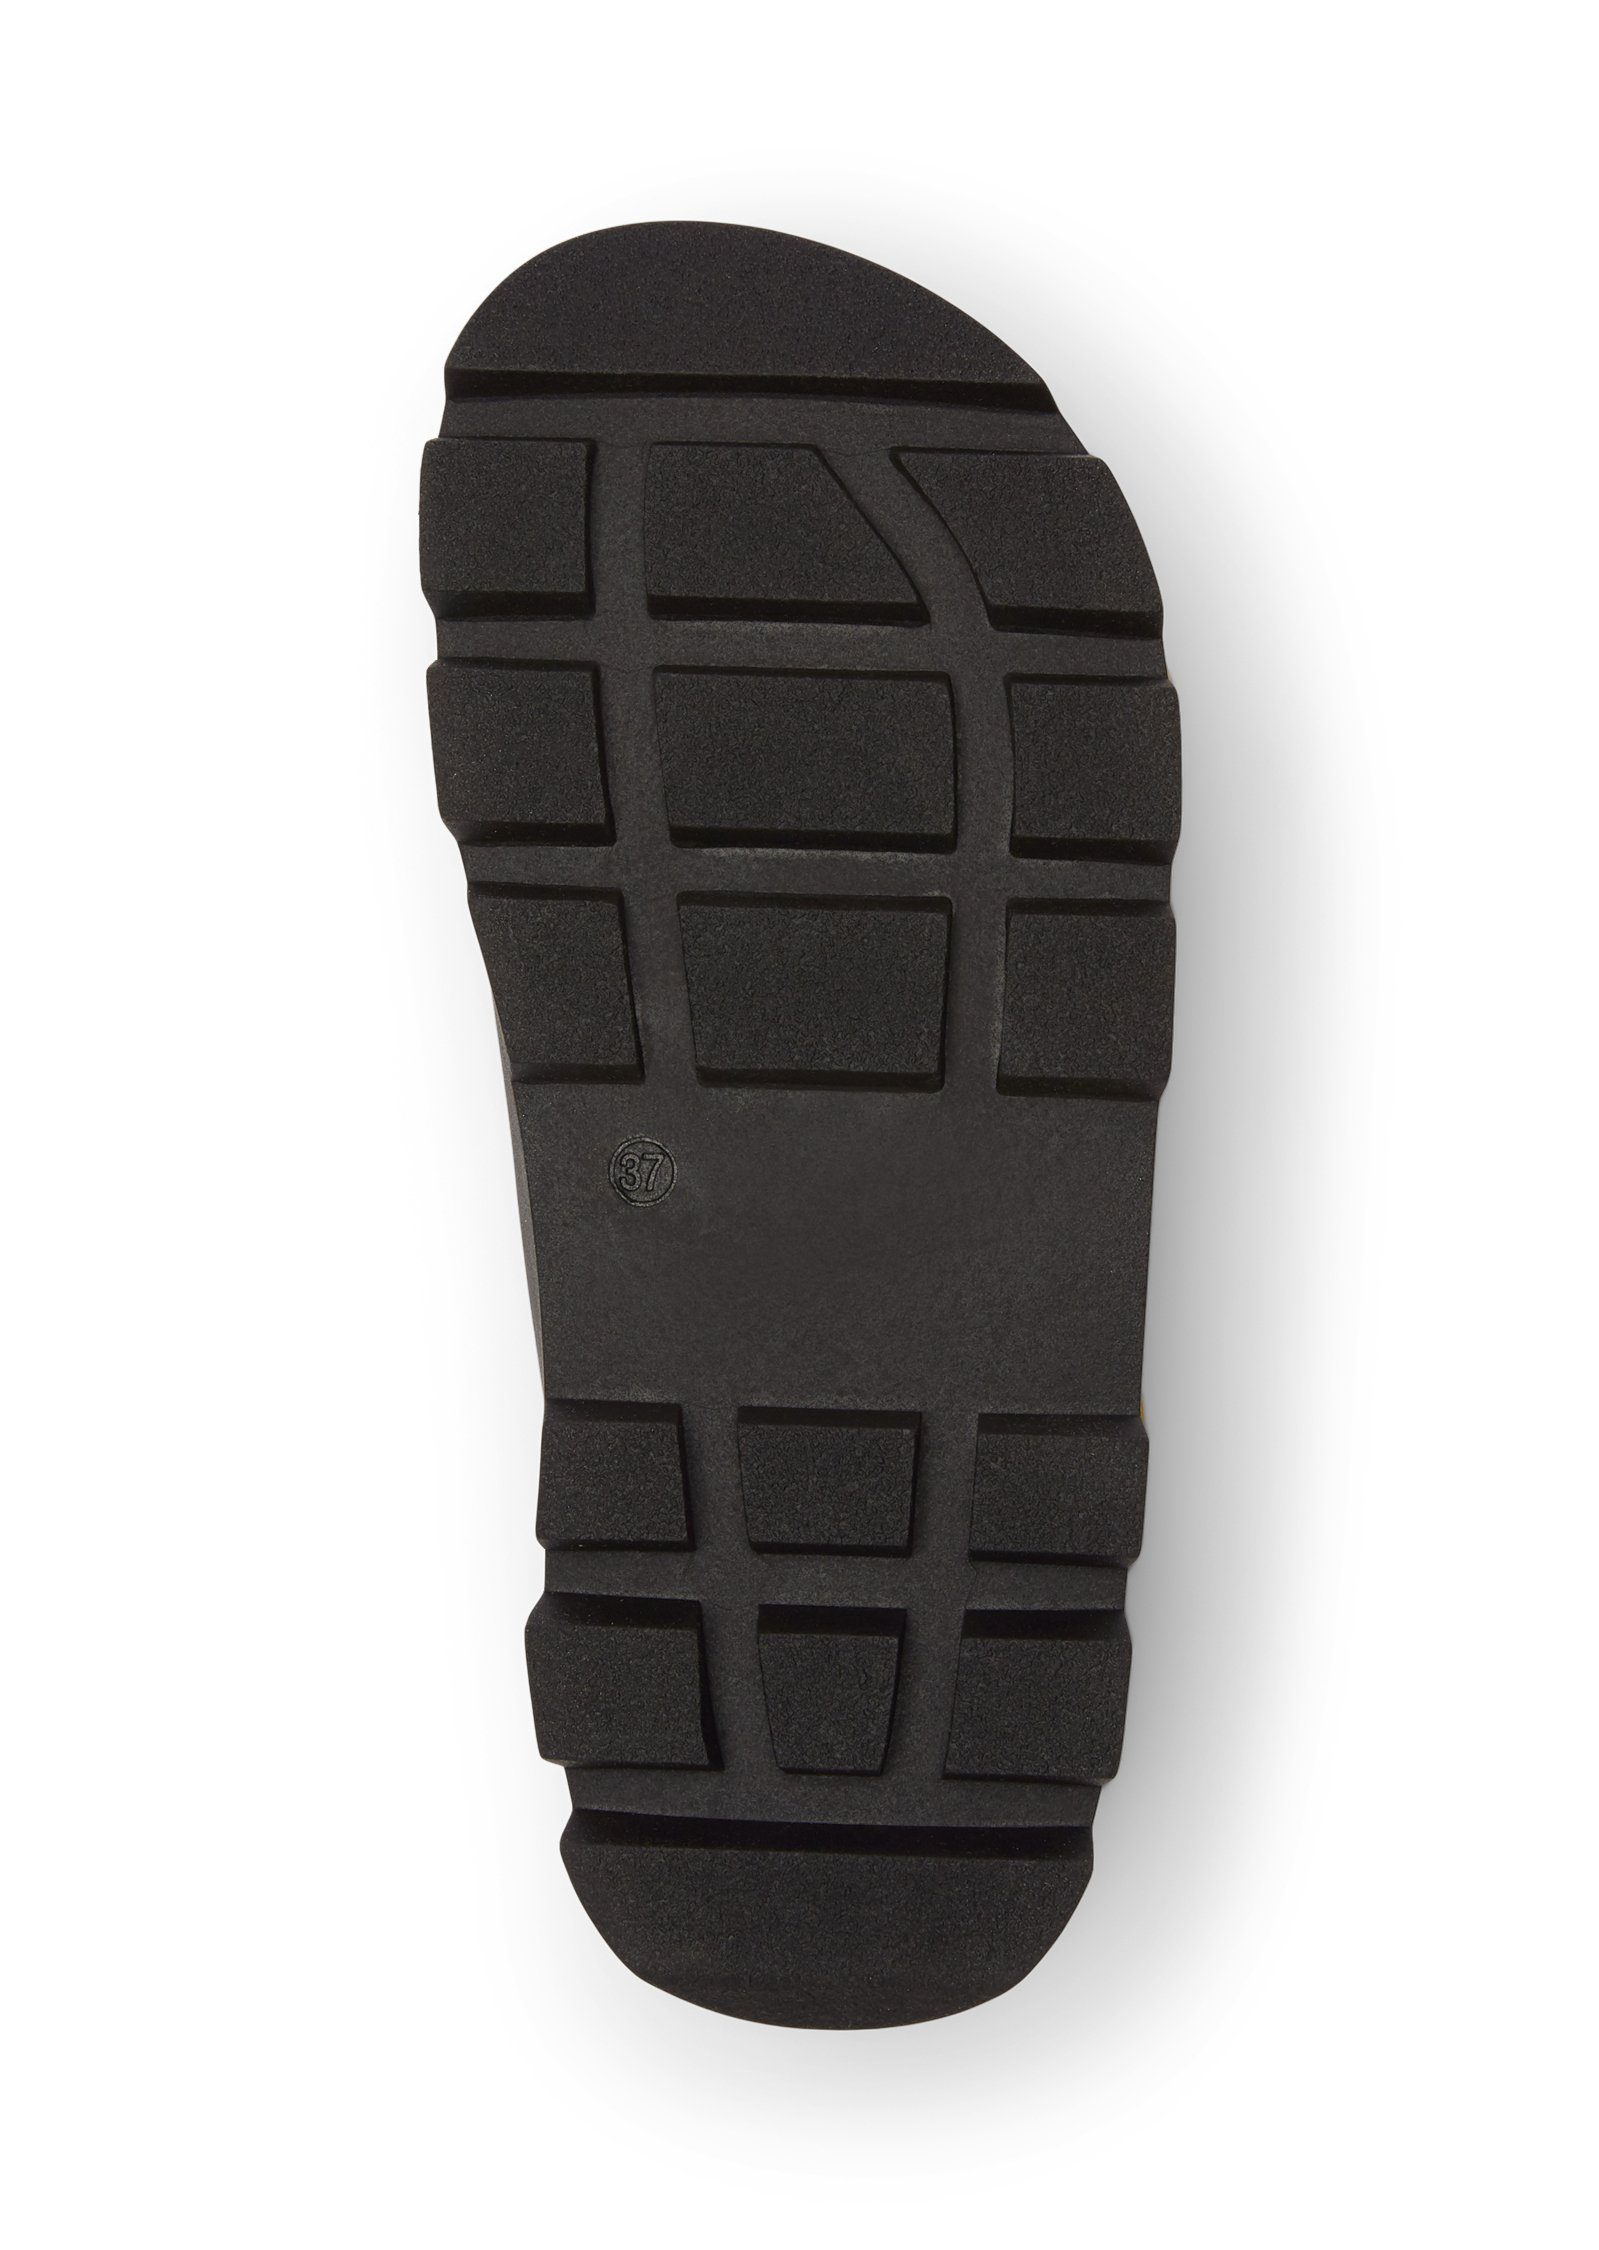 Schuhe Sandalen Marc O'Polo mit ergonomisch geformtem Fußbett Sandale